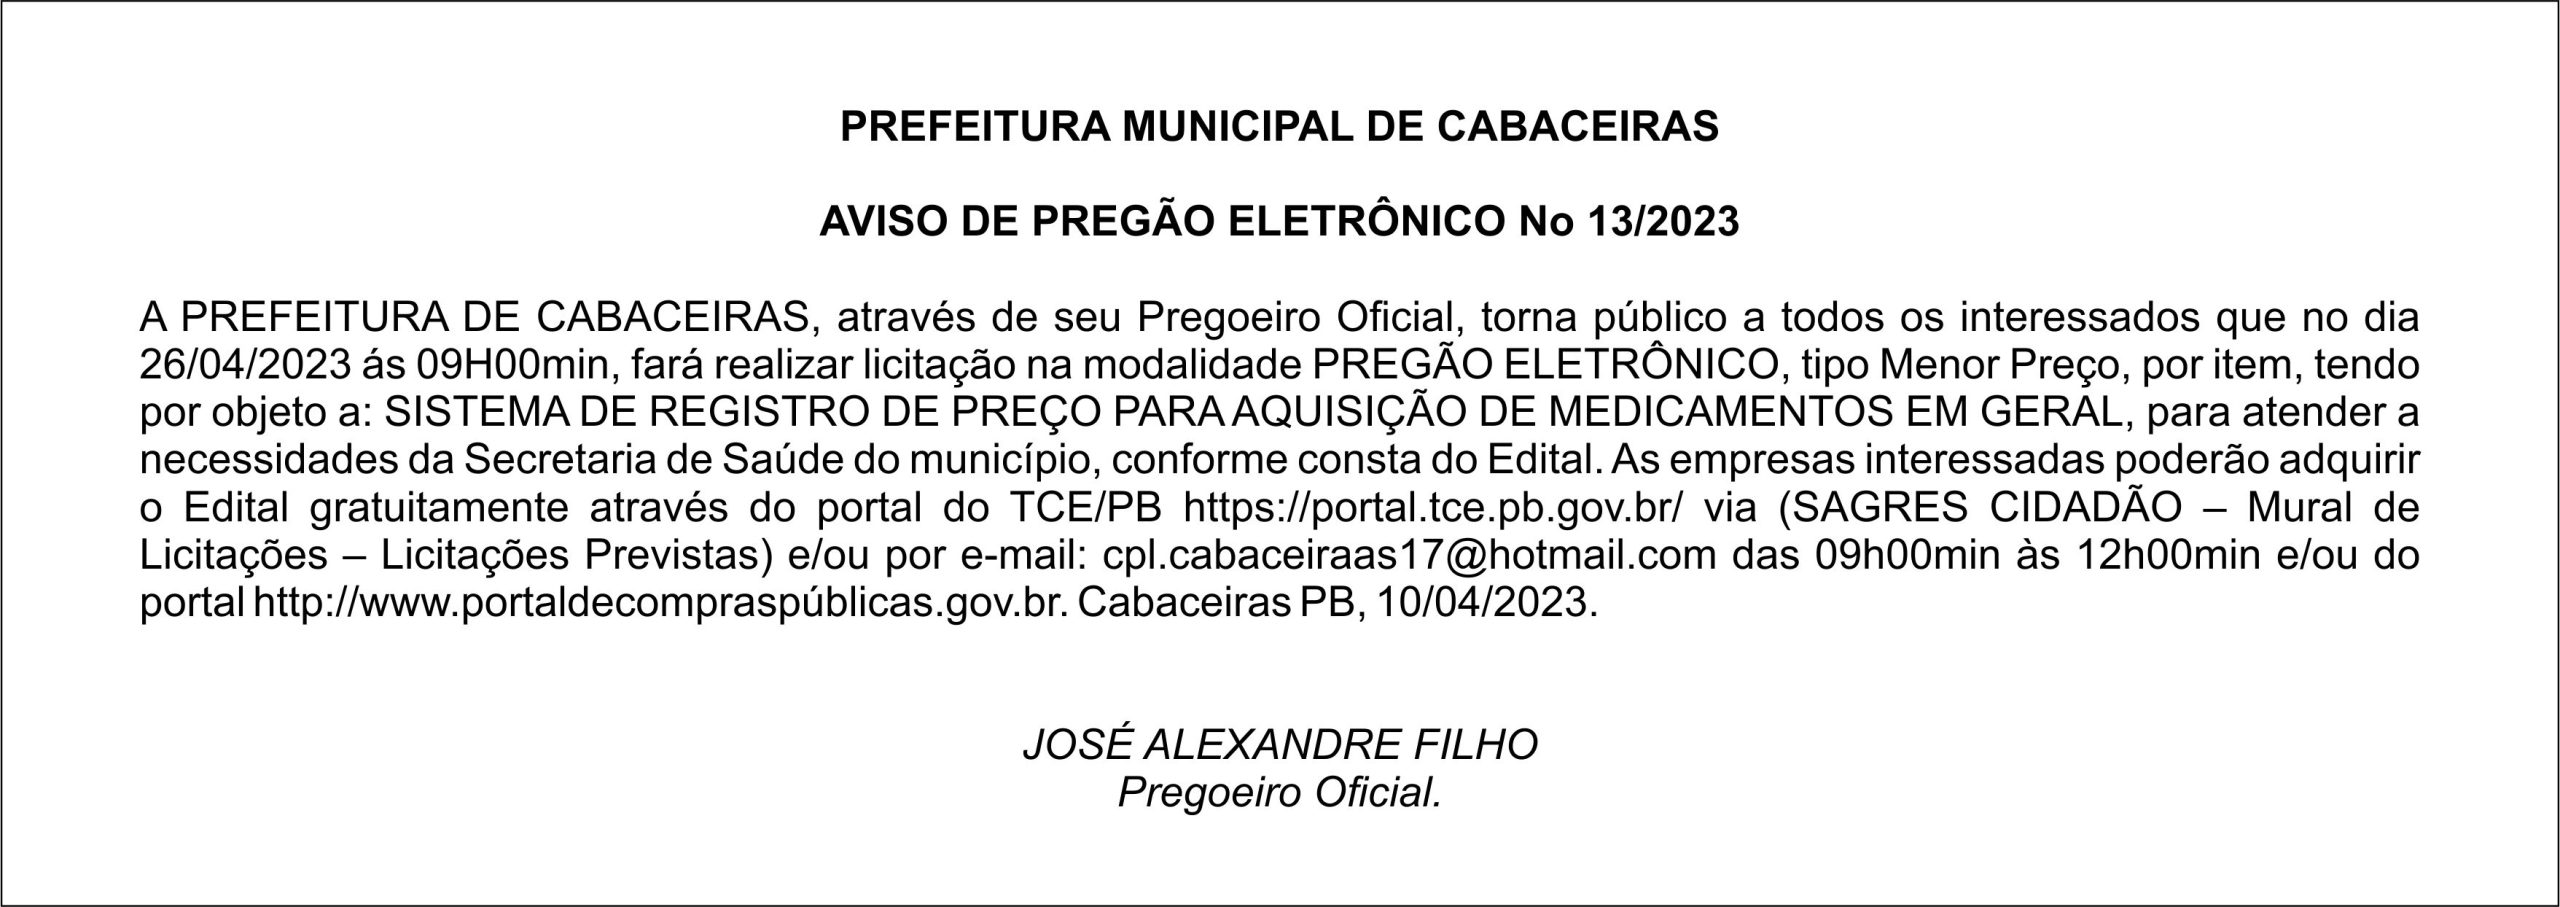 PREFEITURA MUNICIPAL DE CABACEIRAS – AVISO DE PREGÃO ELETRÔNICO N° 13/2023